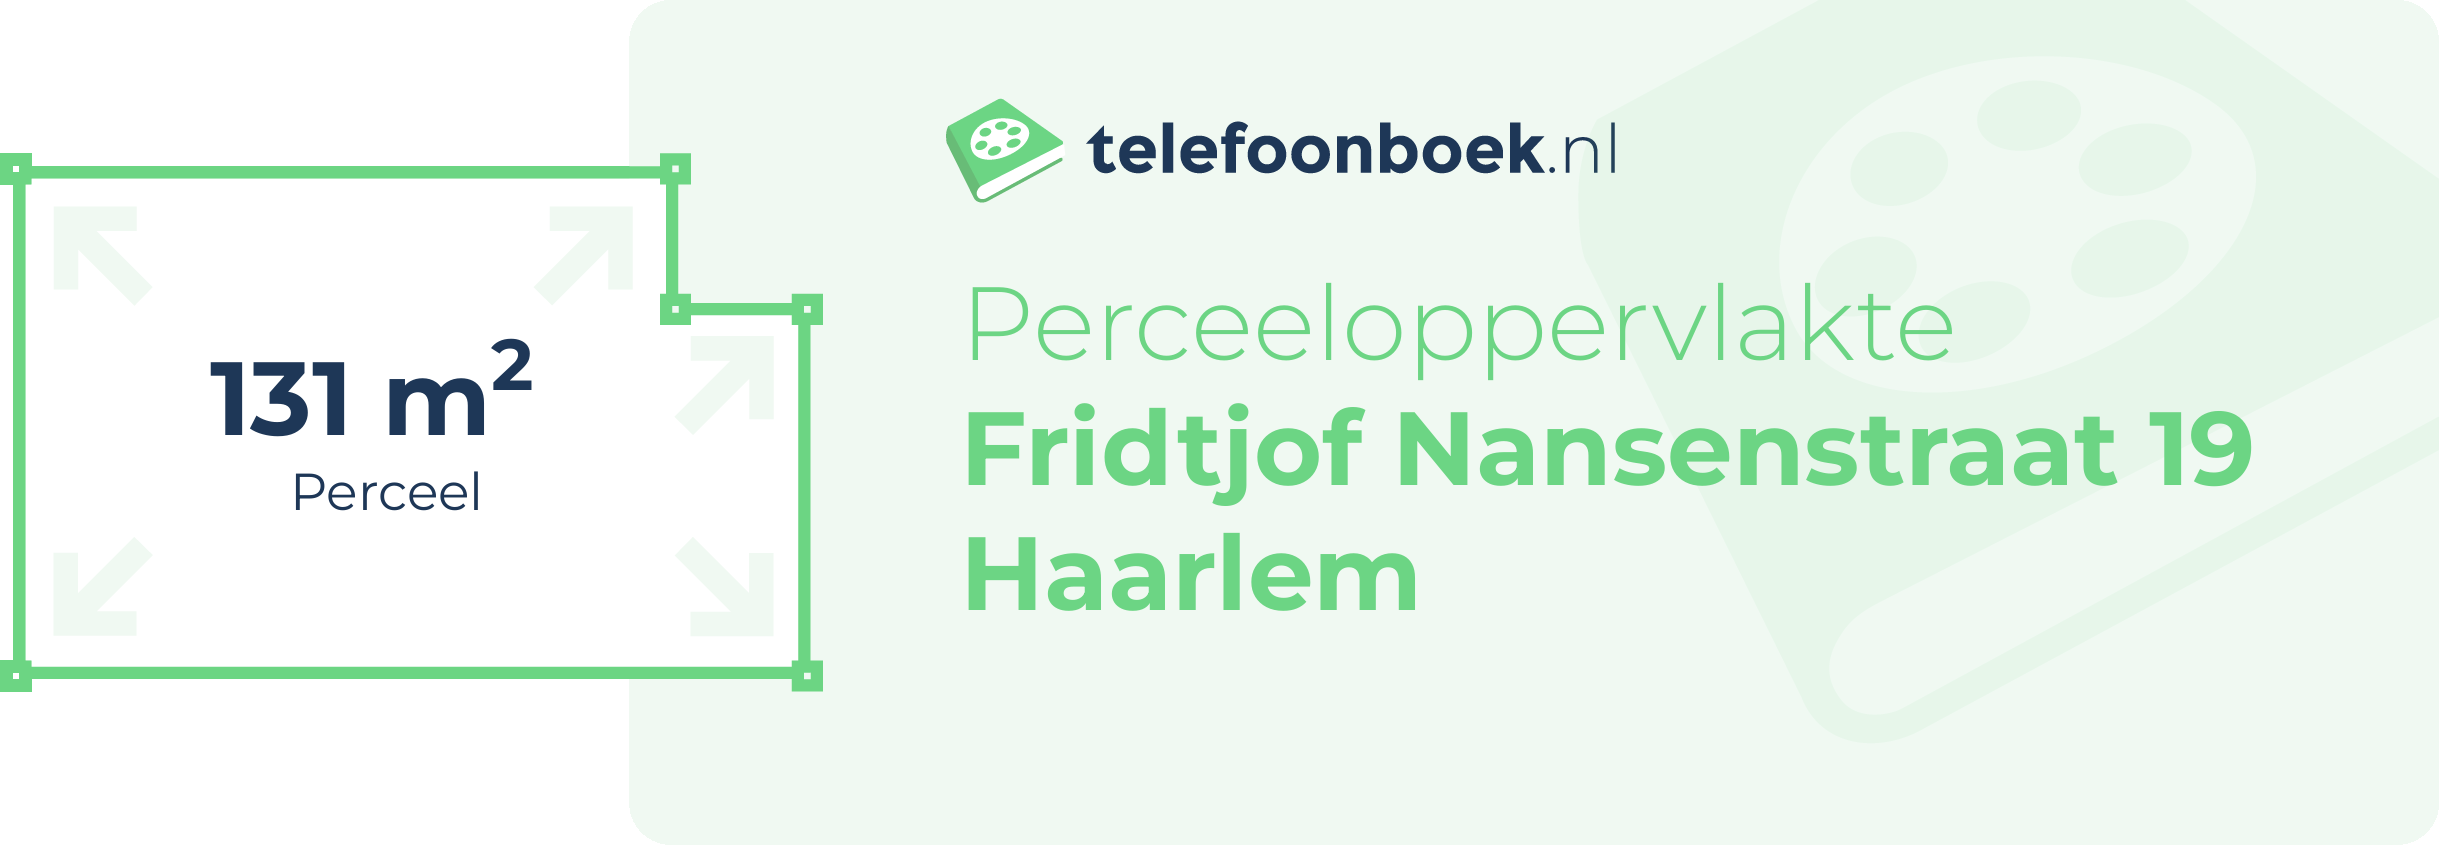 Perceeloppervlakte Fridtjof Nansenstraat 19 Haarlem